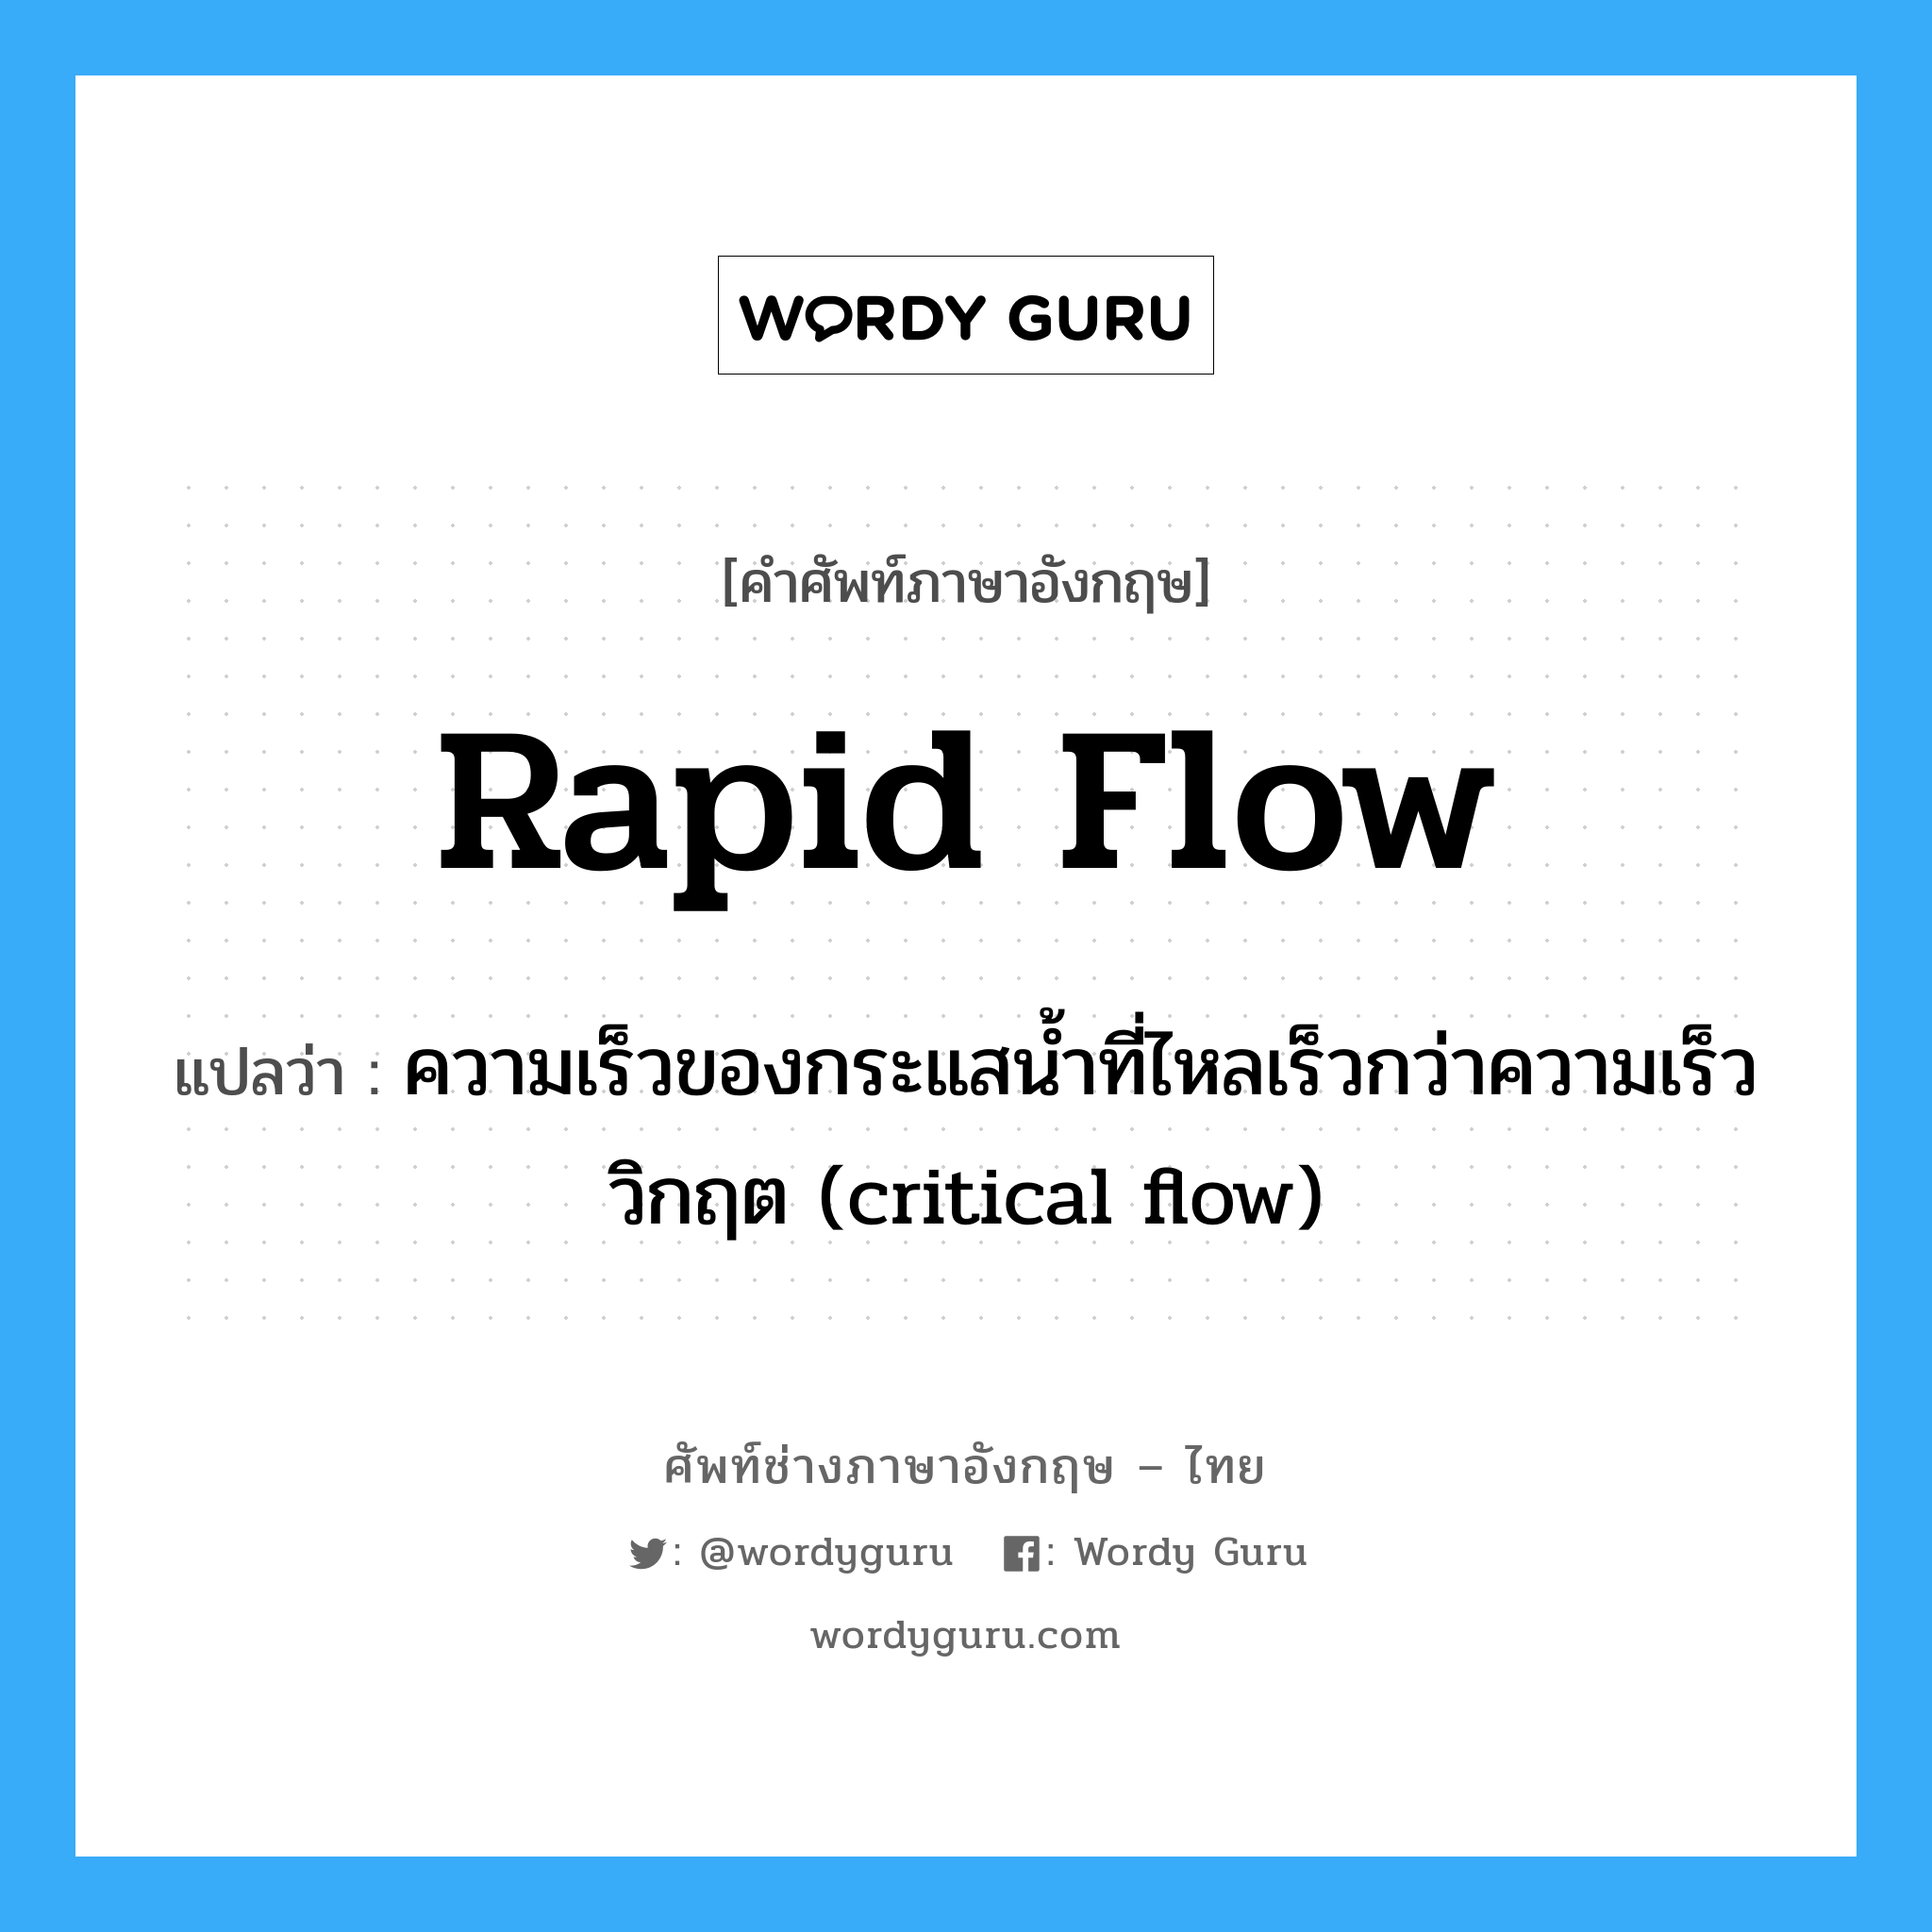 rapid flow แปลว่า?, คำศัพท์ช่างภาษาอังกฤษ - ไทย rapid flow คำศัพท์ภาษาอังกฤษ rapid flow แปลว่า ความเร็วของกระแสน้ำที่ไหลเร็วกว่าความเร็ววิกฤต (critical flow)